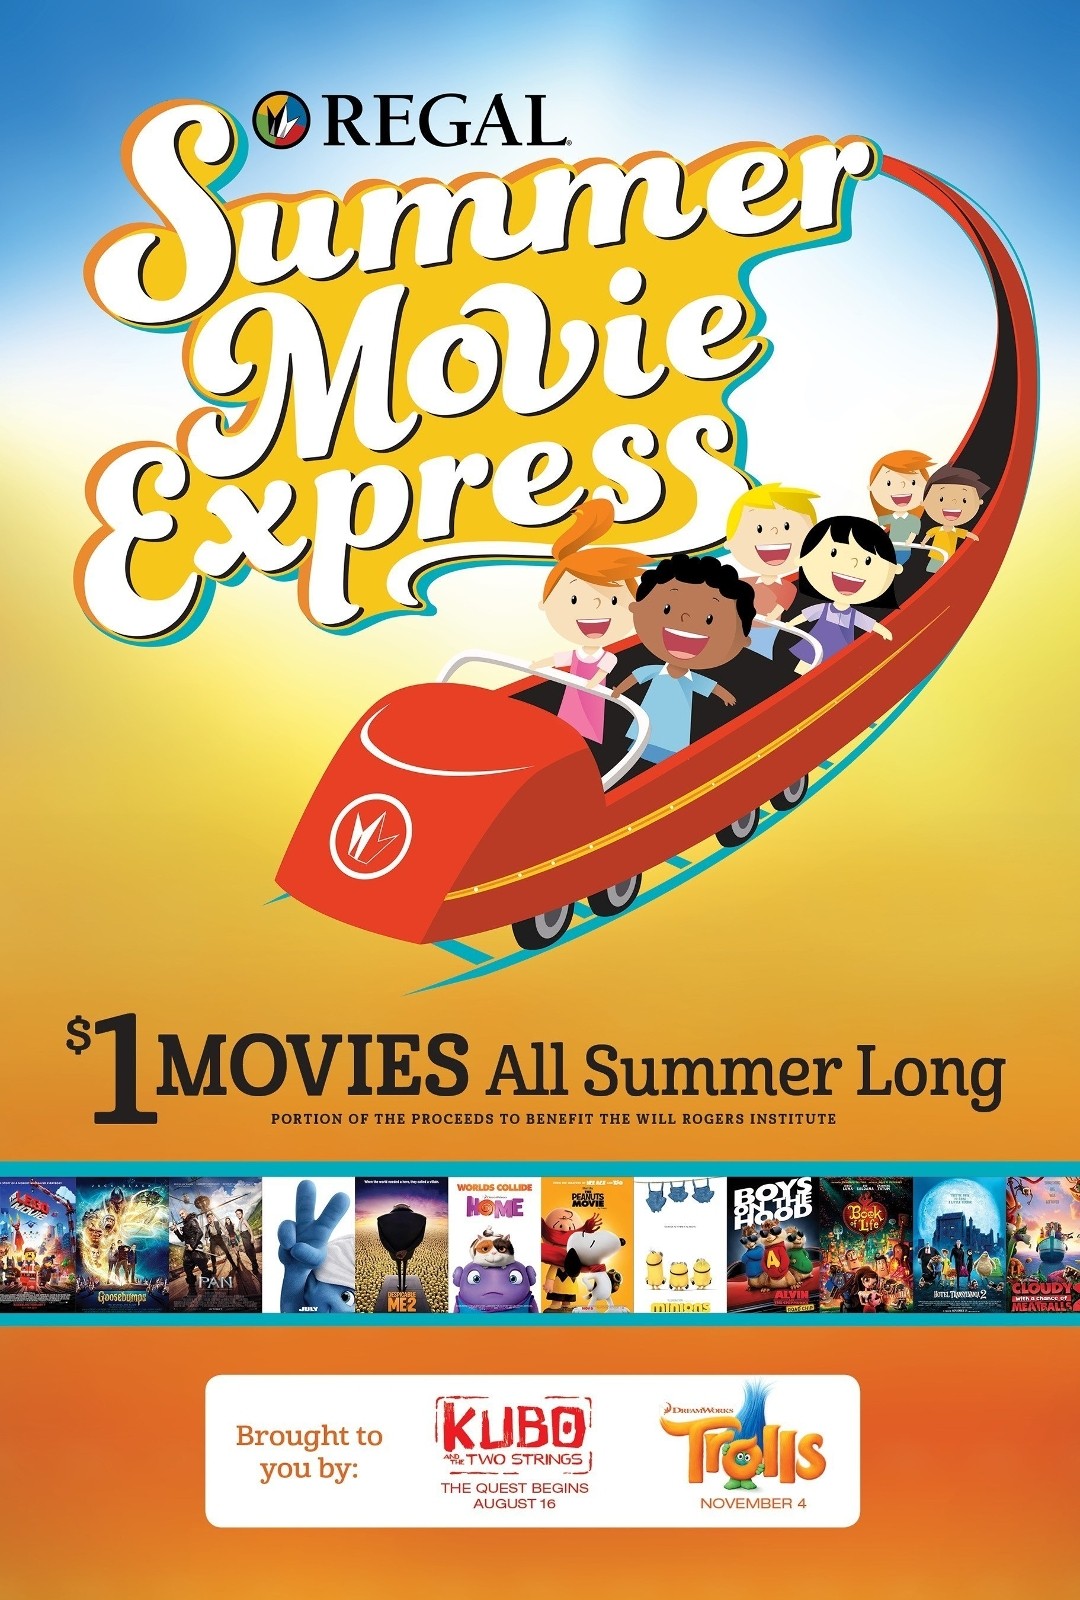 Regal Summer Express Dollar Movie